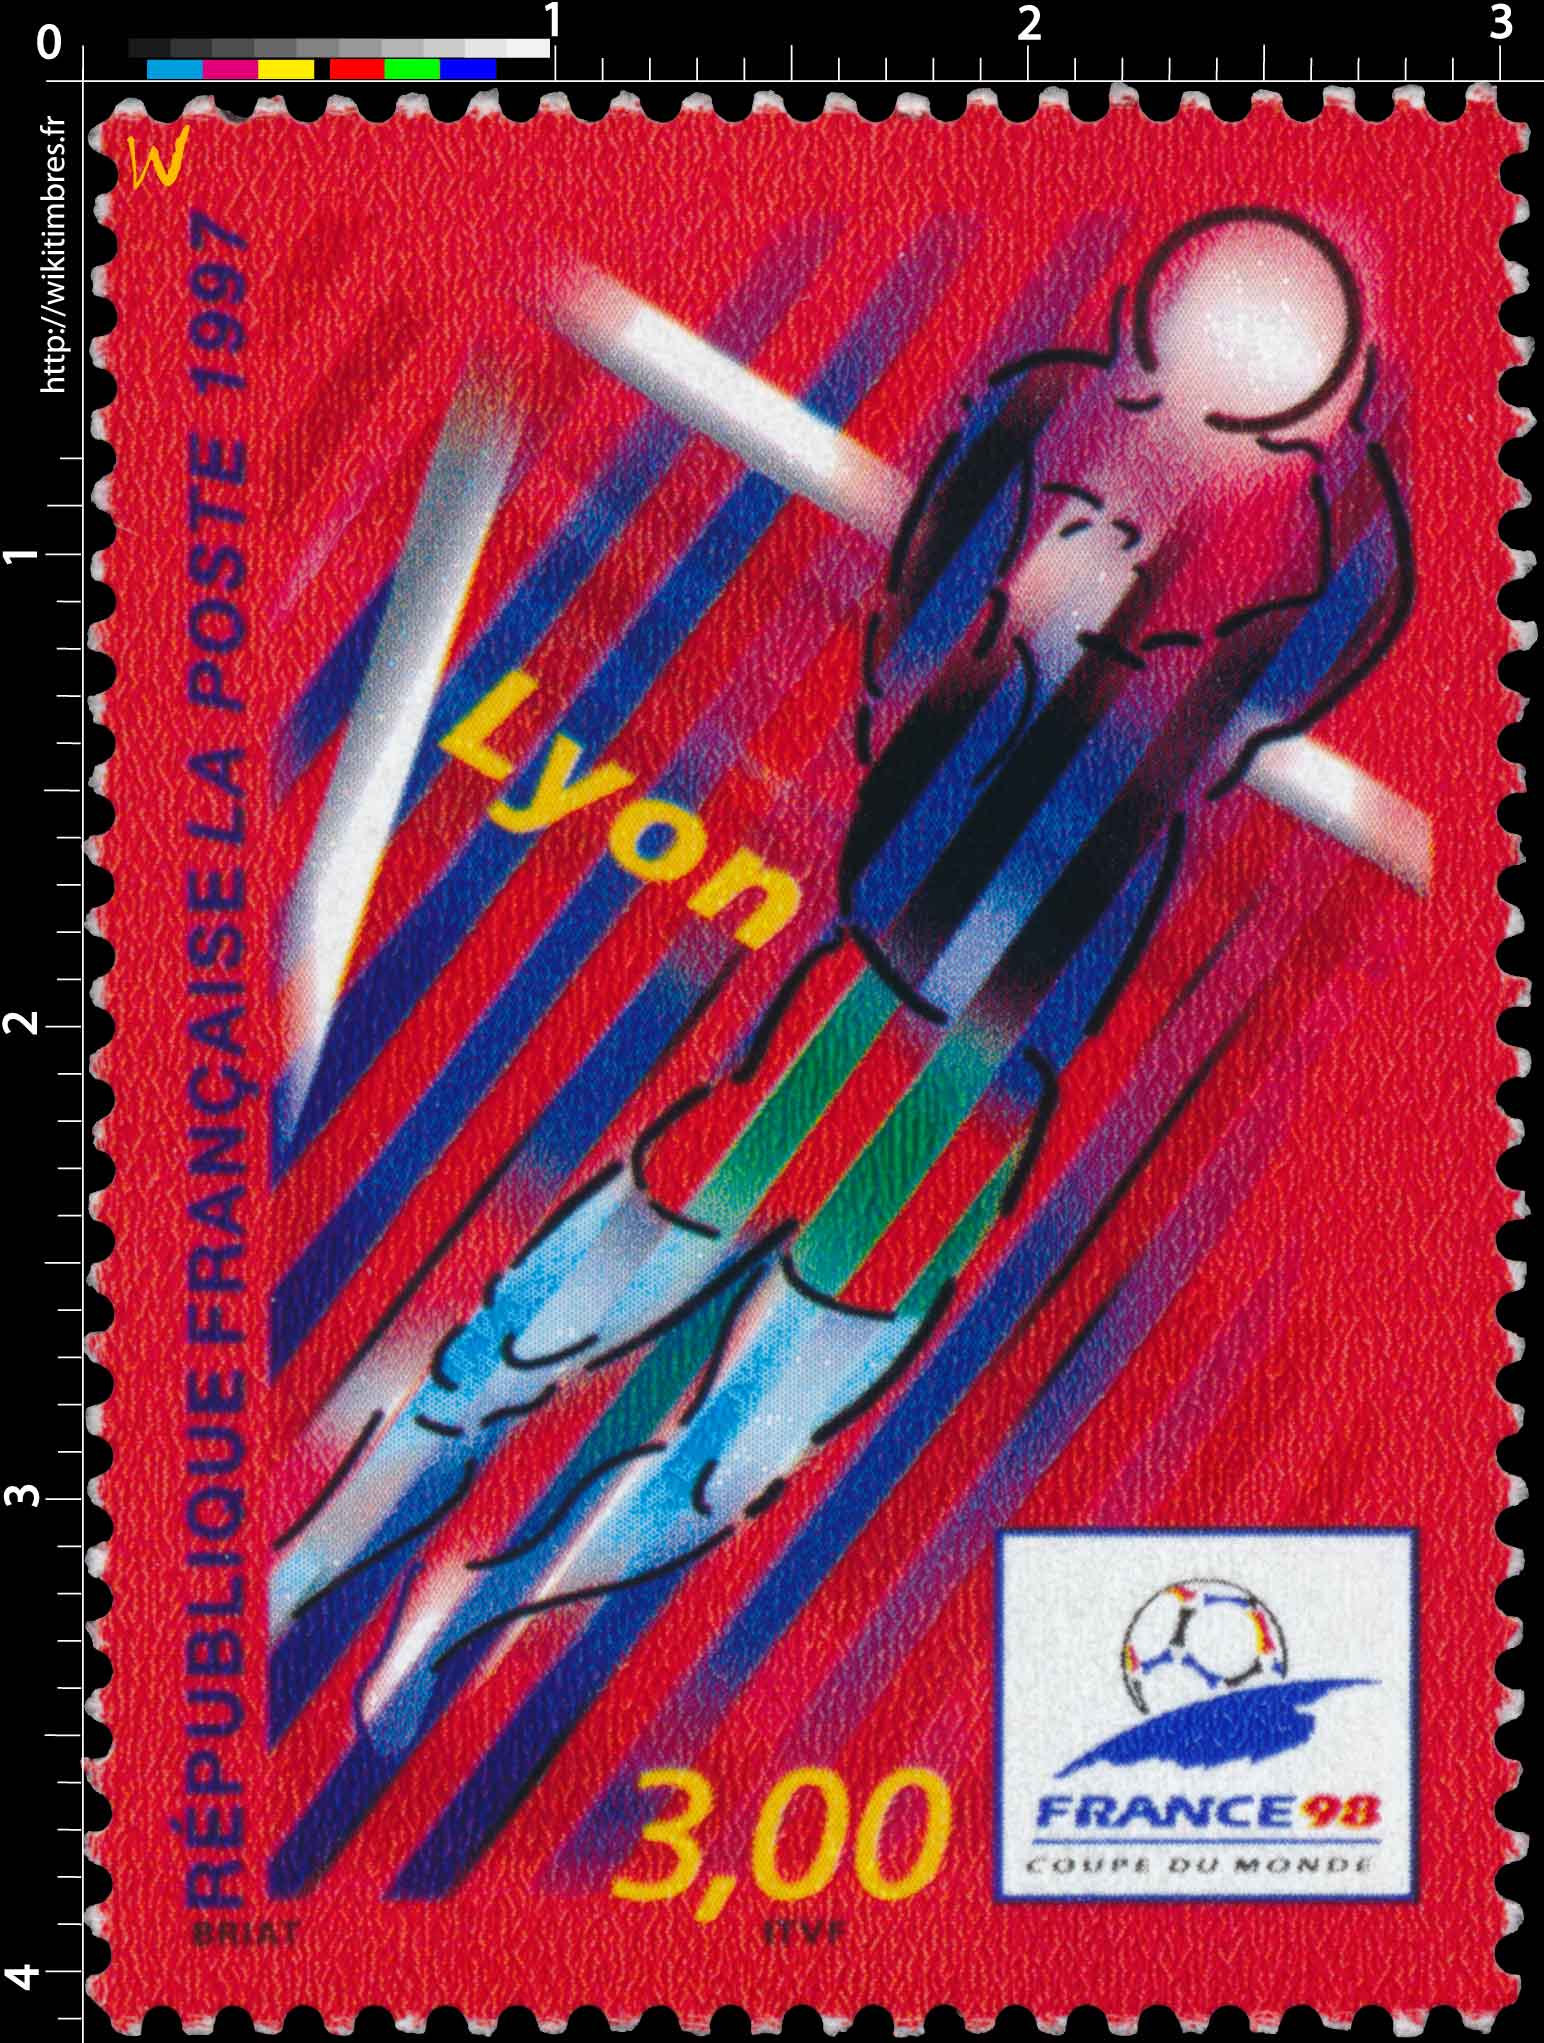 1997 FRANCE 98 COUPE DU MONDE Lyon